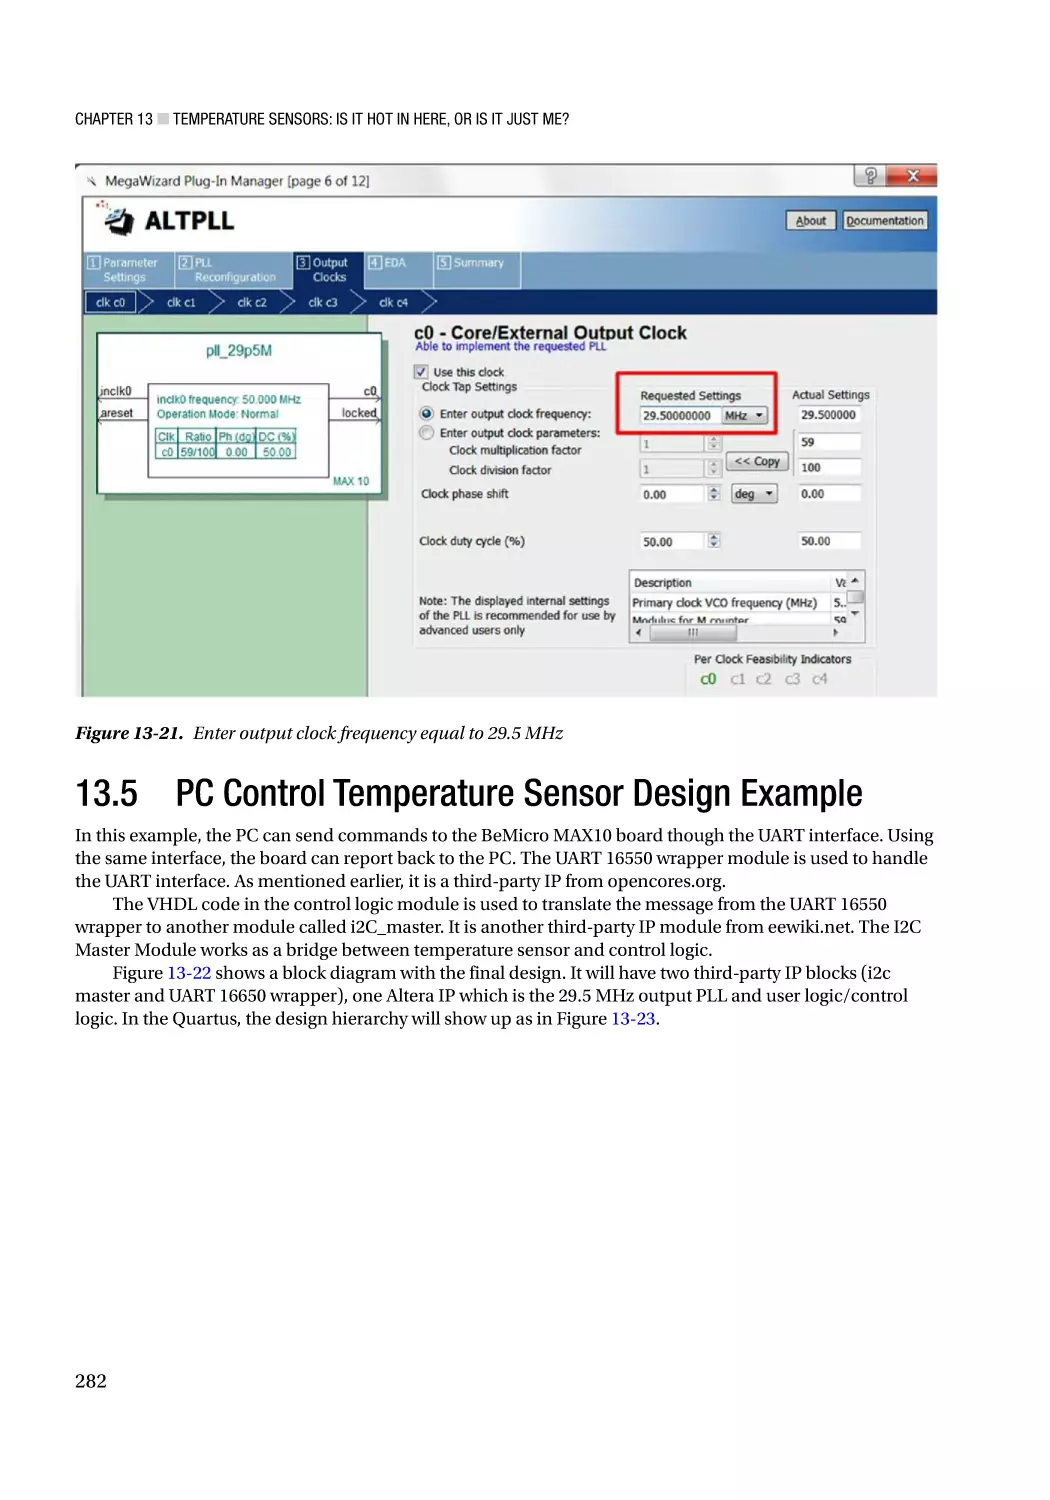 13.5 PC Control Temperature Sensor Design Example